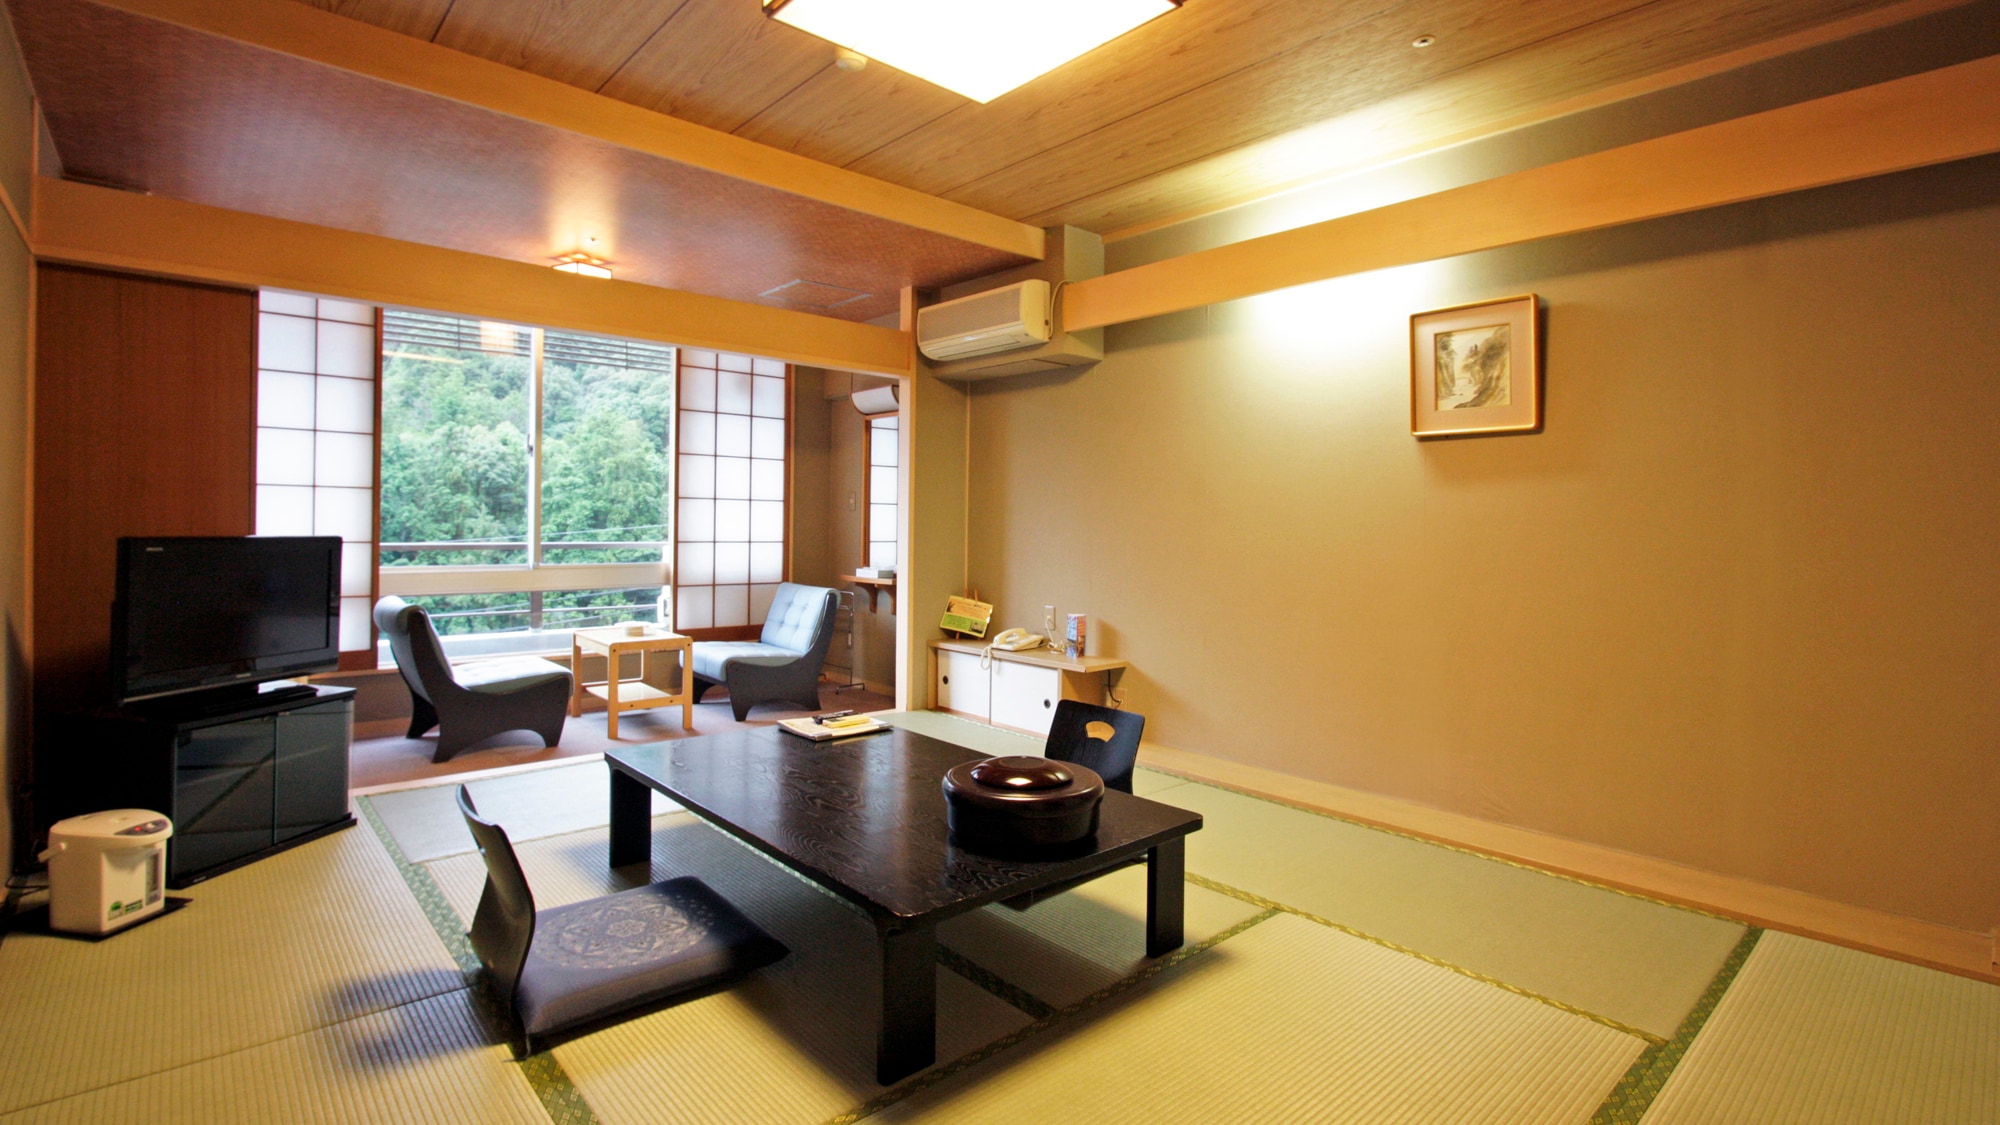 "อาคารหลัก" ห้องสไตล์ญี่ปุ่น 10 เสื่อทาทามิหรือ 12 เสื่อทาทามิ